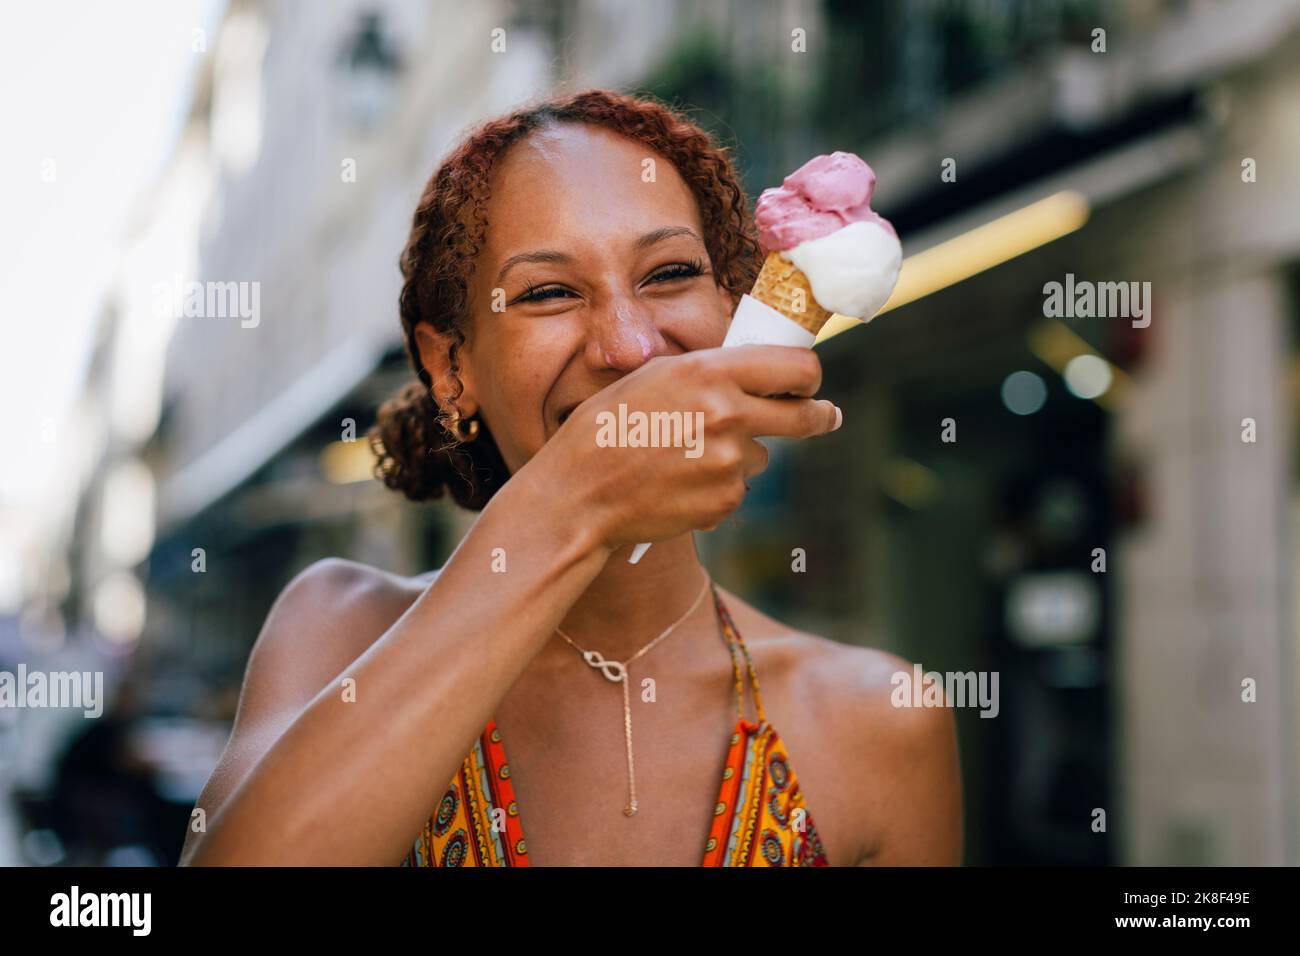 Fröhliche junge Frau, die Eis genießt Stockfoto